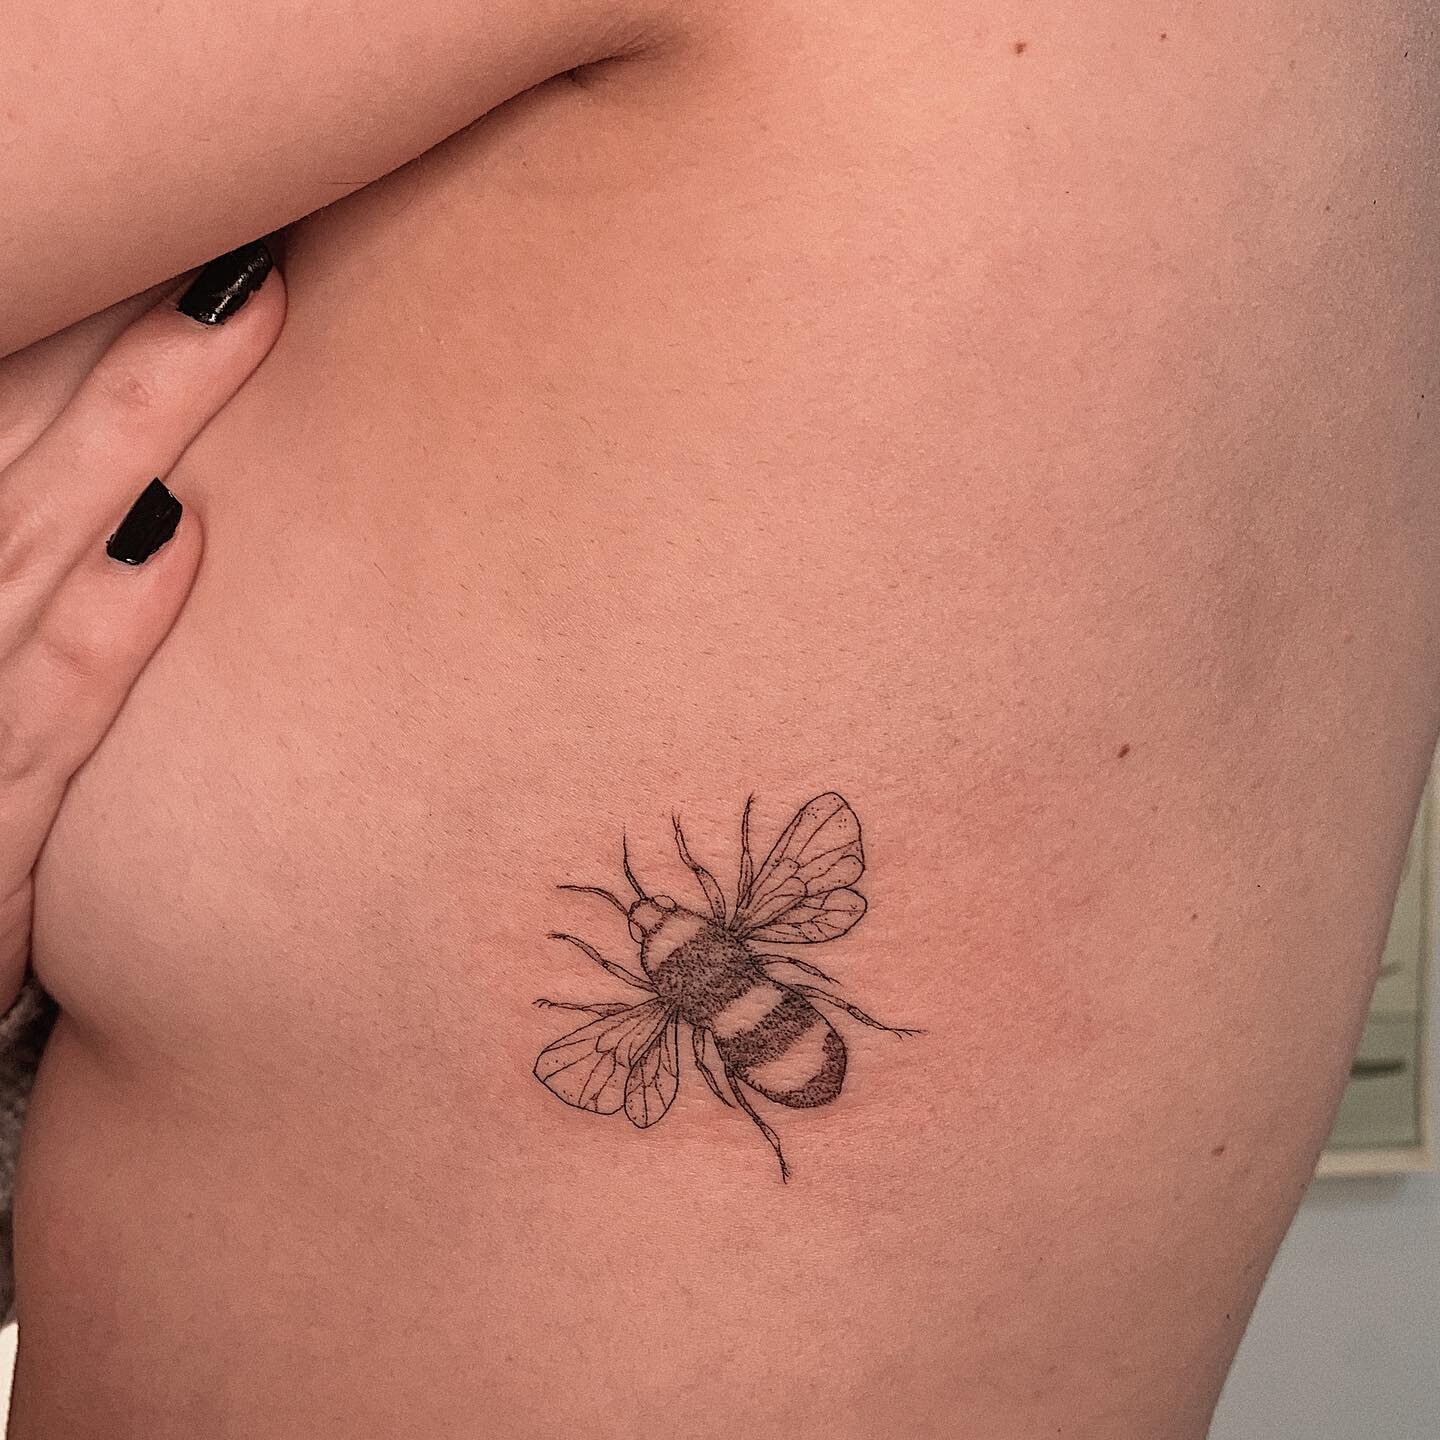 A primeira tatuagem da Nathalia! Obrigada pela tarde gostosa &hearts;️ Max e Lina pedem desculpas por seres antissociais nesse friozin!
.
.
.
#bee #beetattoo #abelha #tattoodelicada #firsttattoo #tattooing #tatuagemdelicada #tattoosp #delicatetattoo 